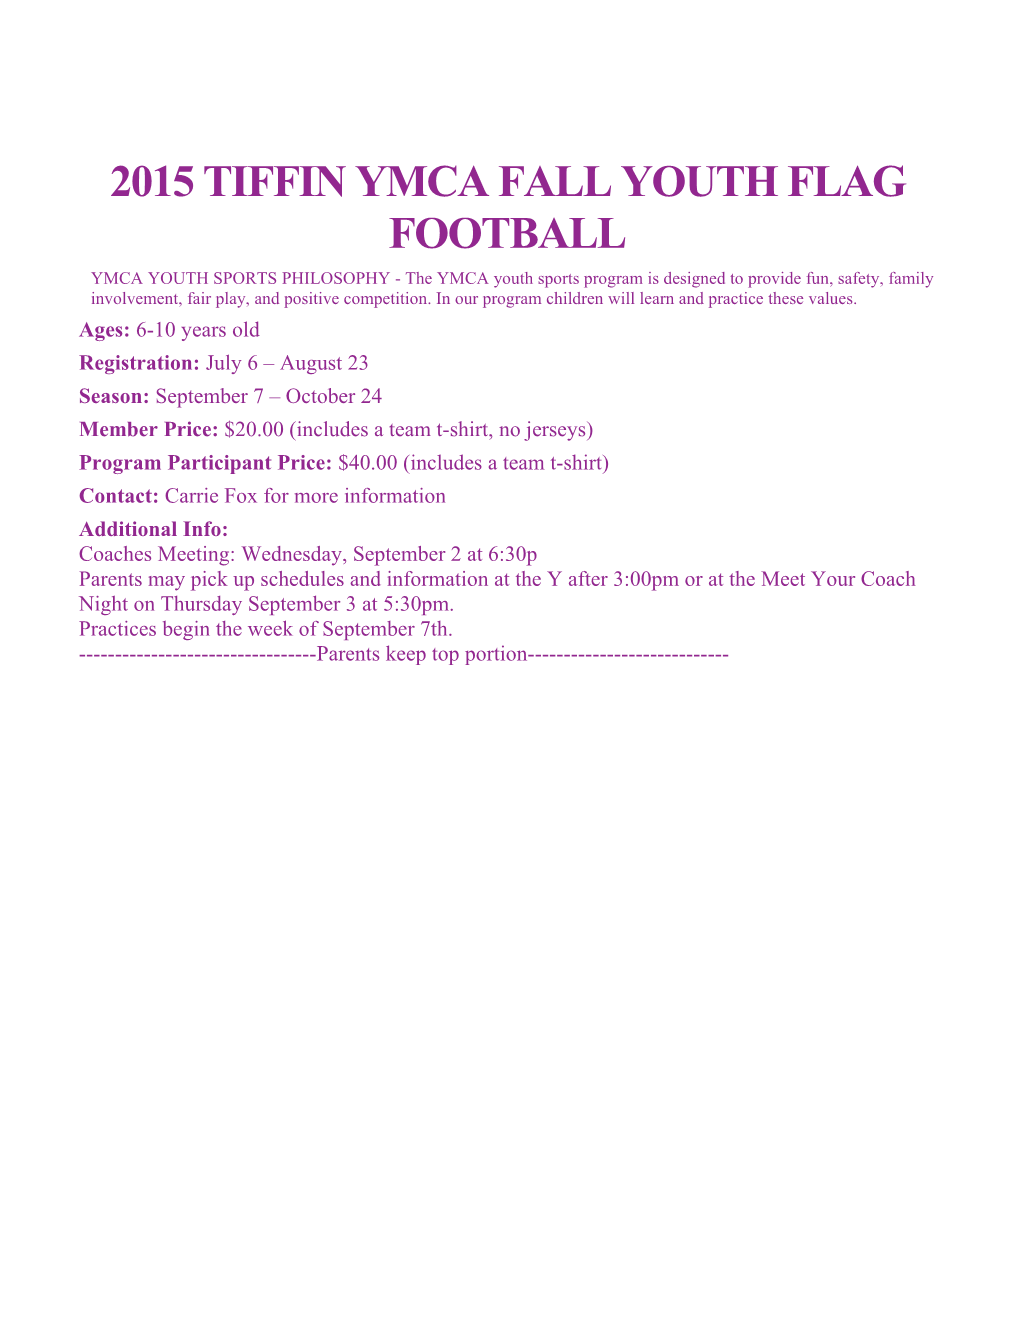 2015 Tiffin YMCA Fall Youth Flag Football